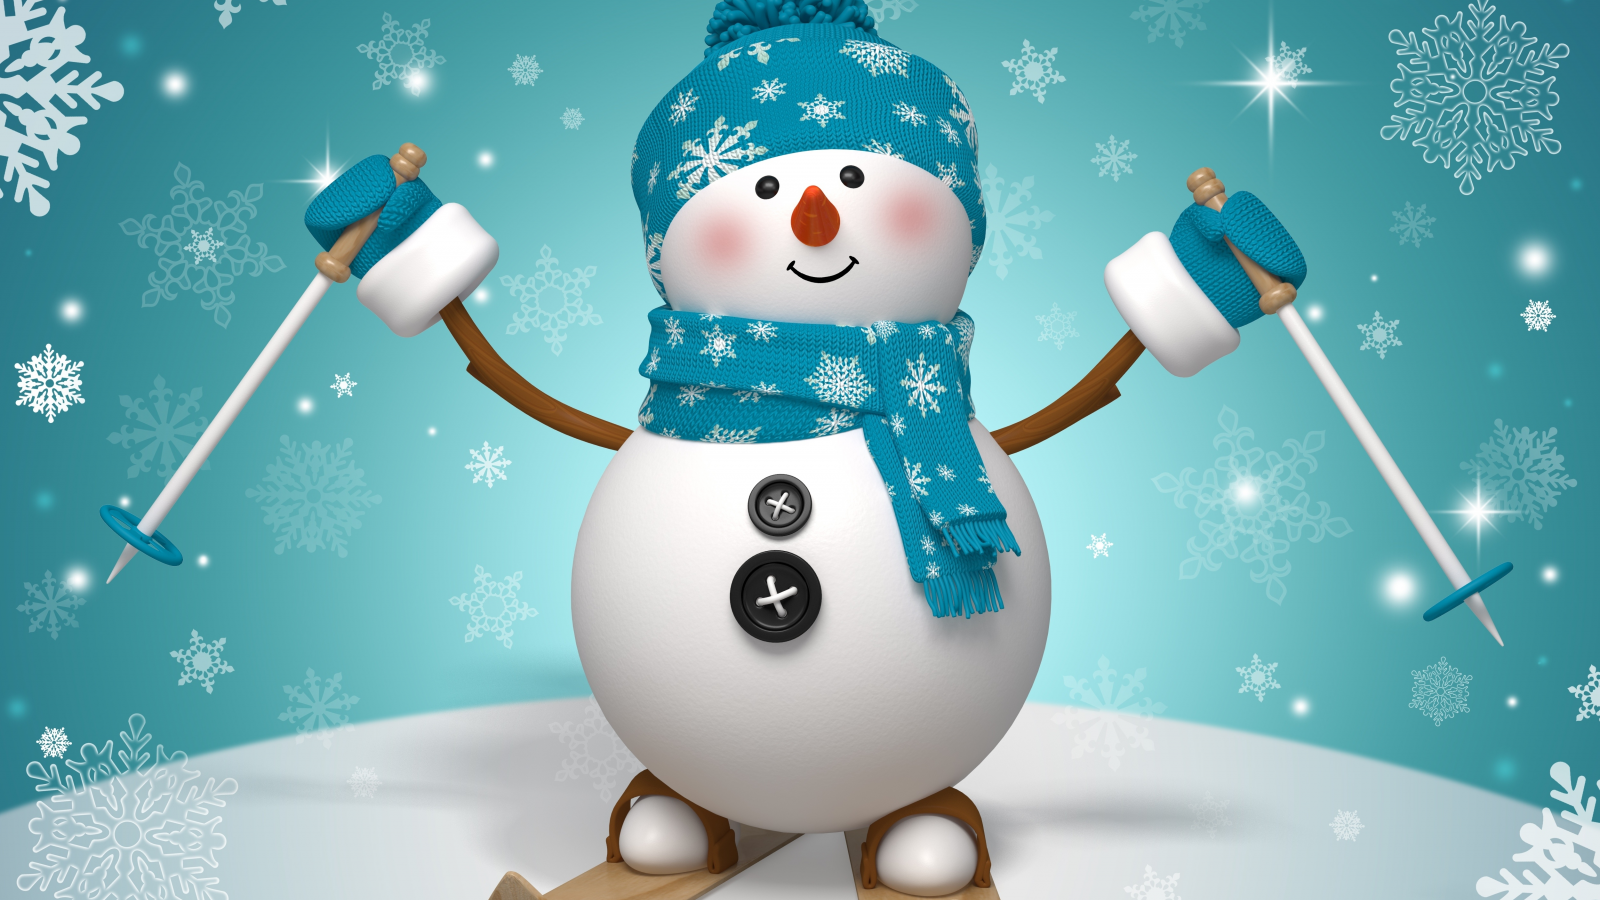  snow, winter, рождество, snowman, новый год